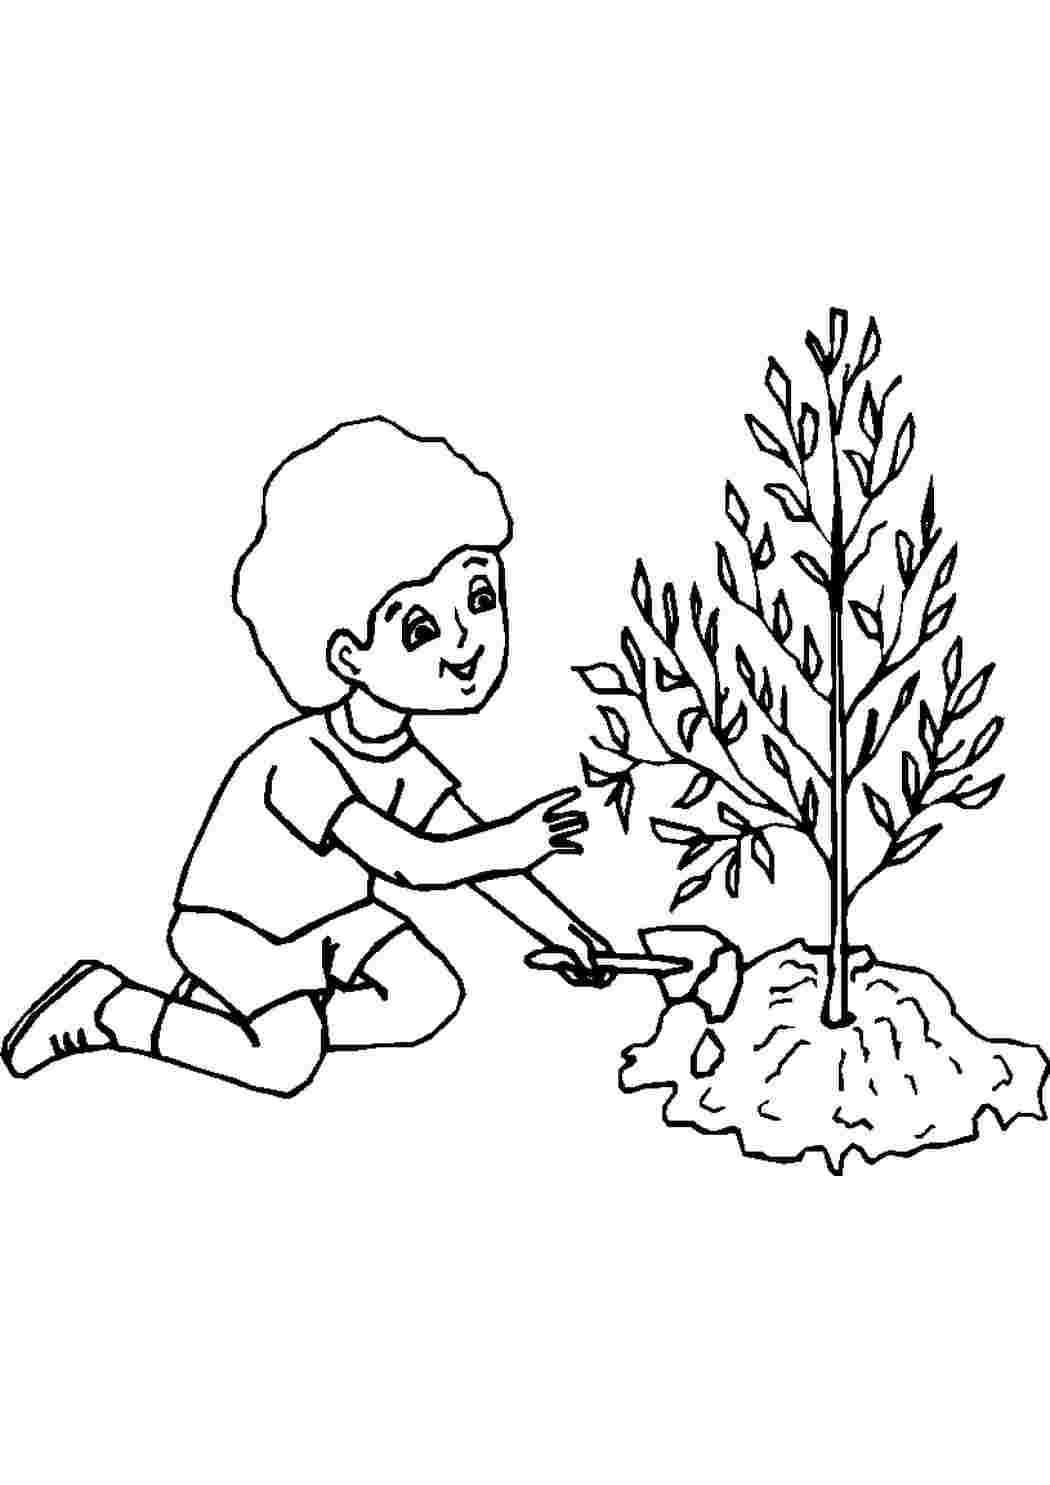 Раскраски Мальчик посадил дерево. Печатать раскарску. Мальчик посадил дерево. Раскраски без СМС.